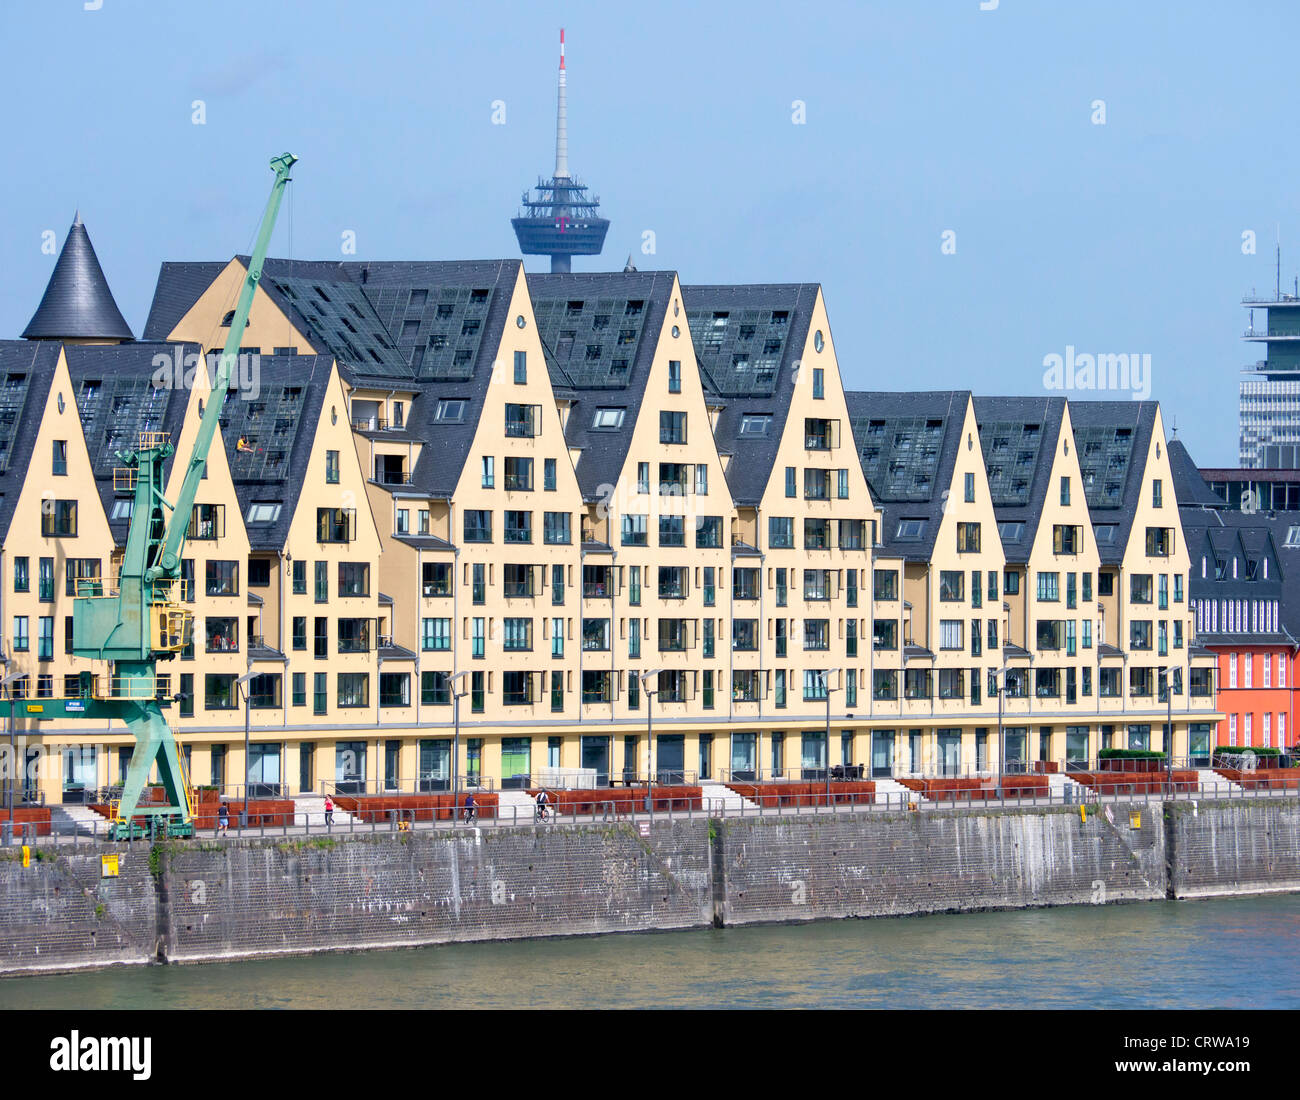 Appartement haut de gamme s dans les bâtiments historiques à nouveau Rheinauhafen quartier commercial et résidentiel à Cologne Allemagne Banque D'Images